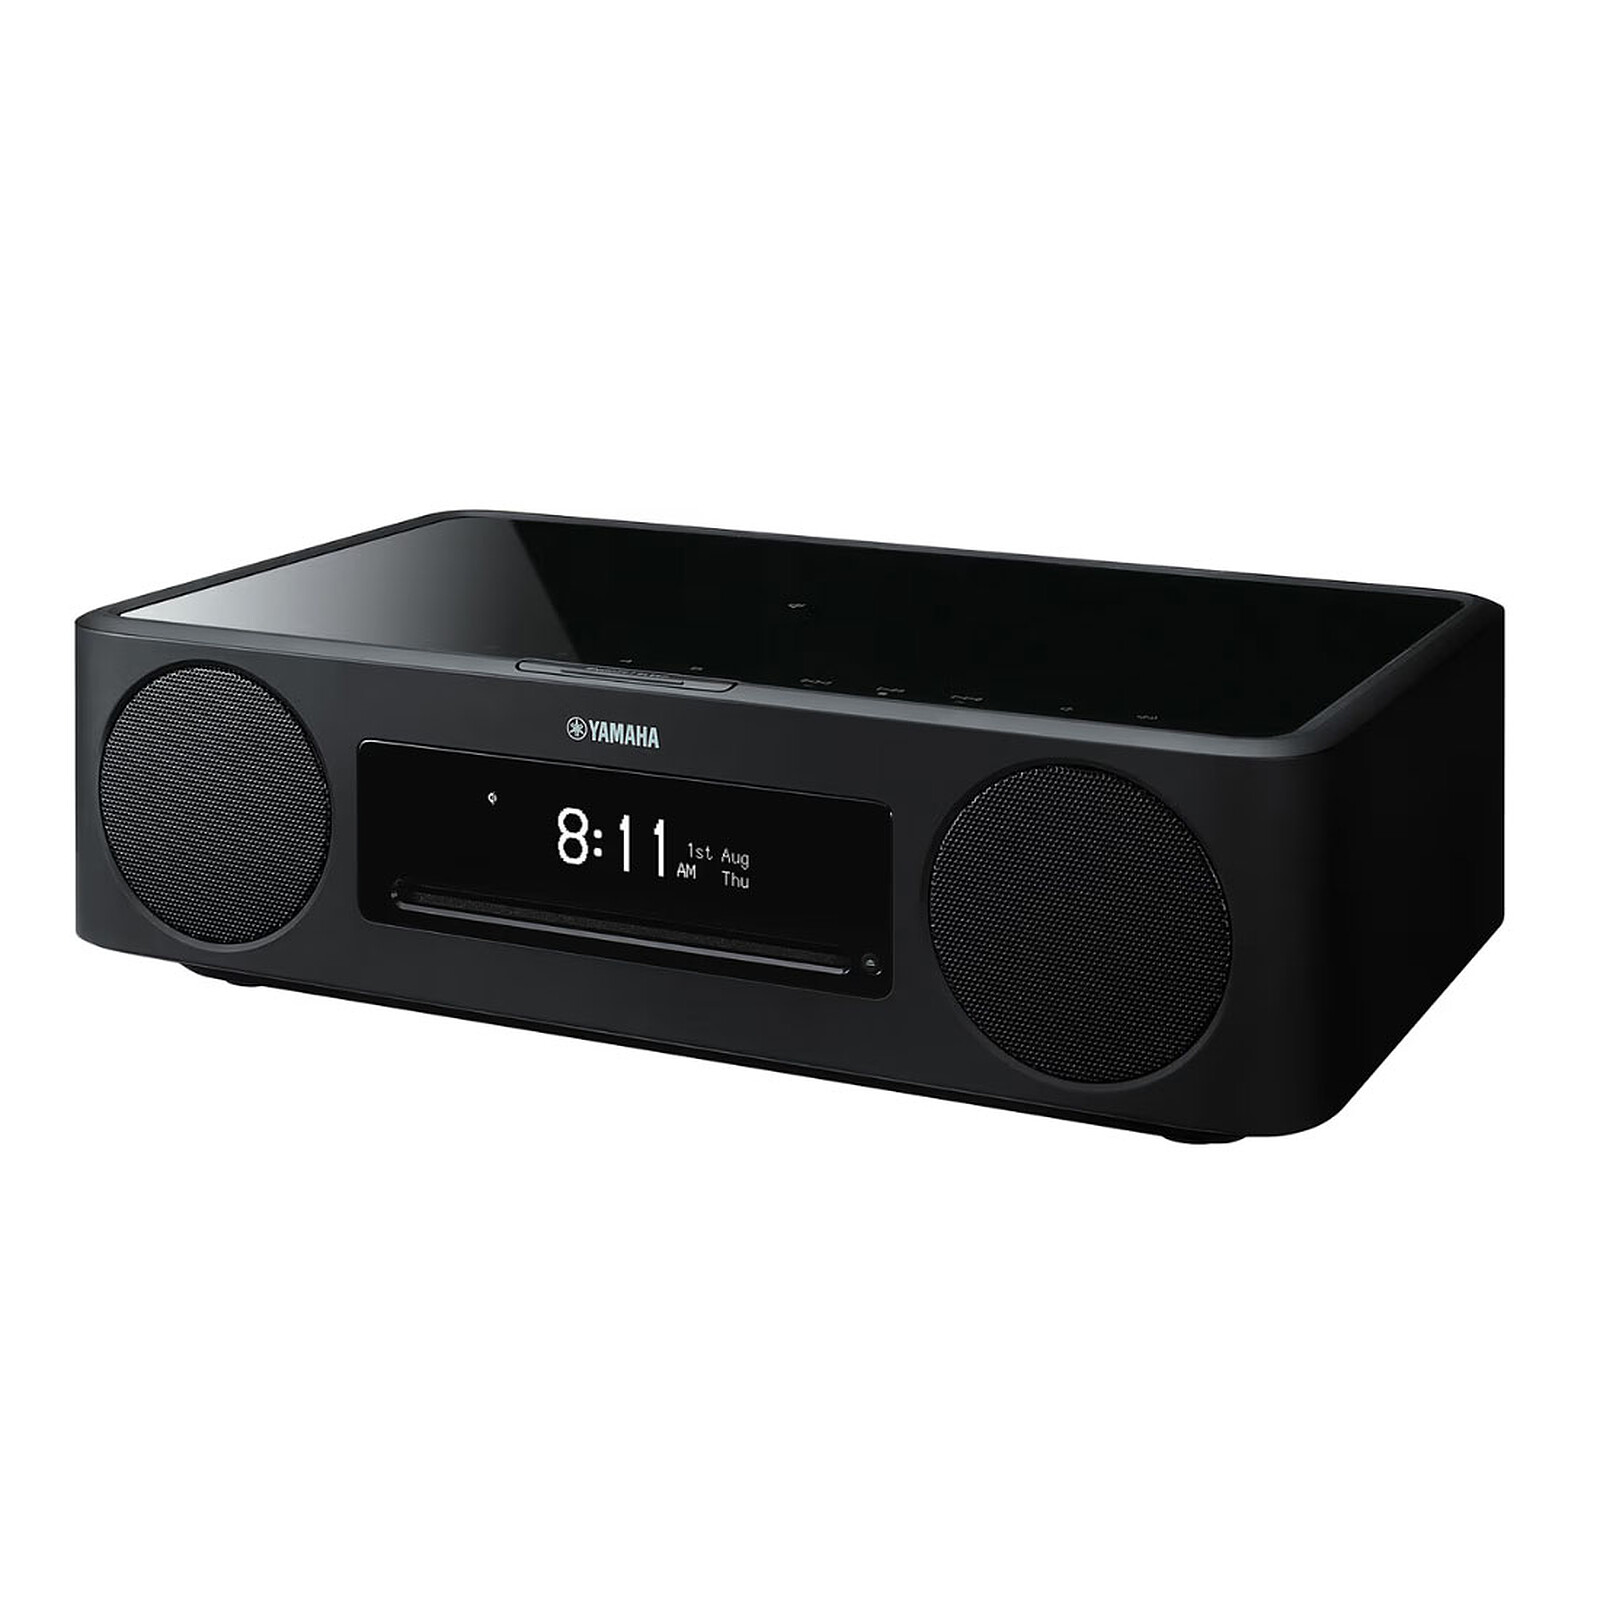 auna TT- Play SE platine vinyle - deux haut-parleurs stéréo - Bluetooth 4.2  - USB - 3